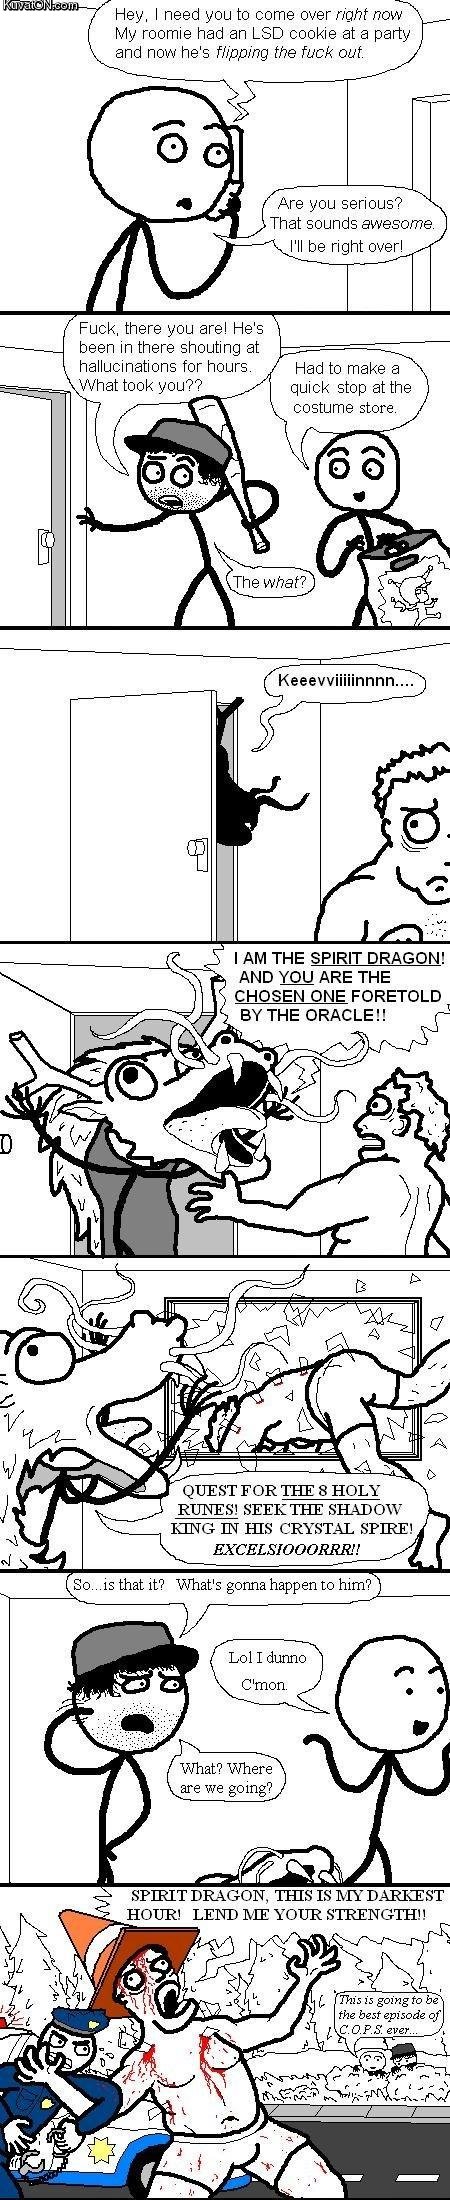 lsd_dragon_comic.jpg